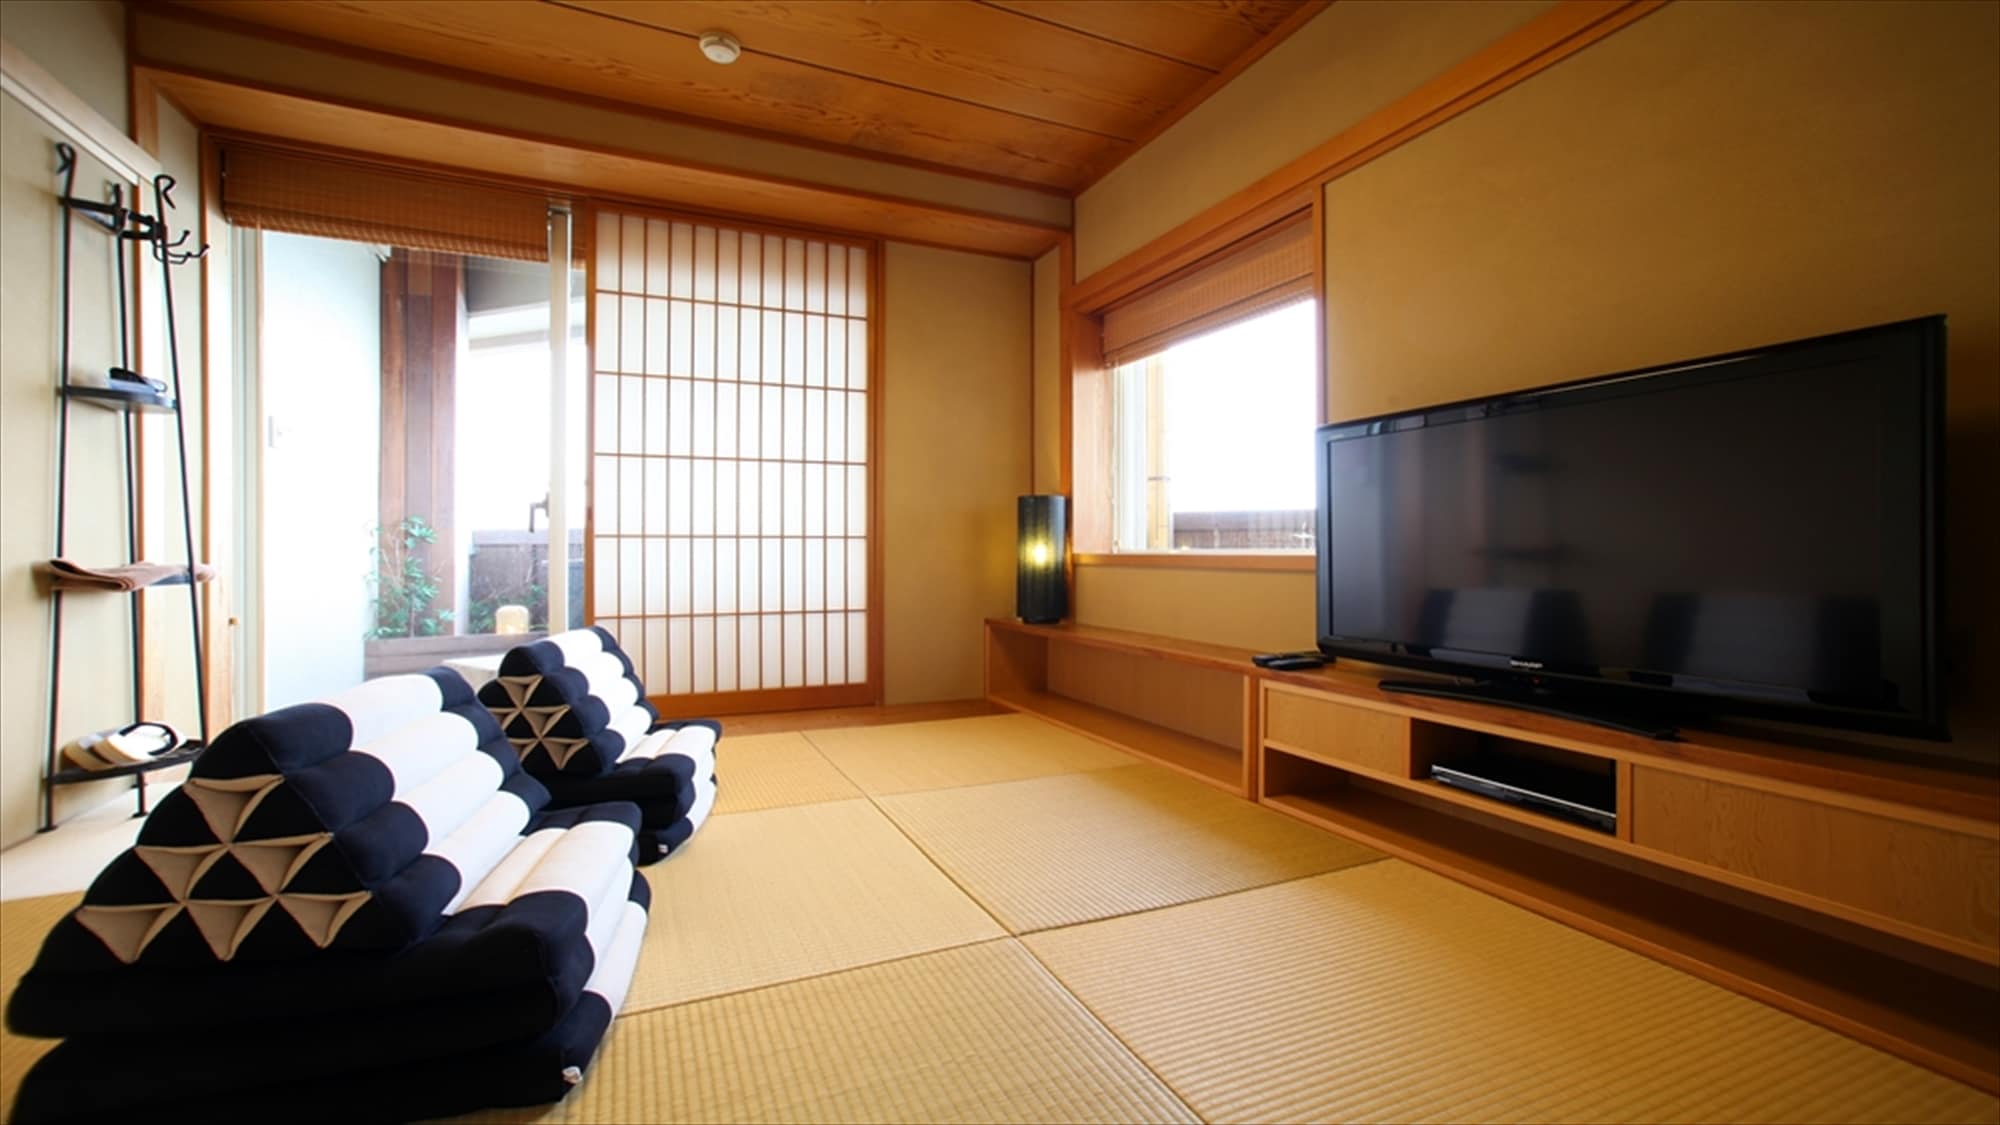 [ห้องเตียงใหญ่สไตล์ญี่ปุ่น-ตะวันตก 2 ห้อง] ห้องถัดไปประเภทห้องสไตล์ญี่ปุ่น คุณจะติดใจความสบายของเบาะทรงสามเหลี่ยม